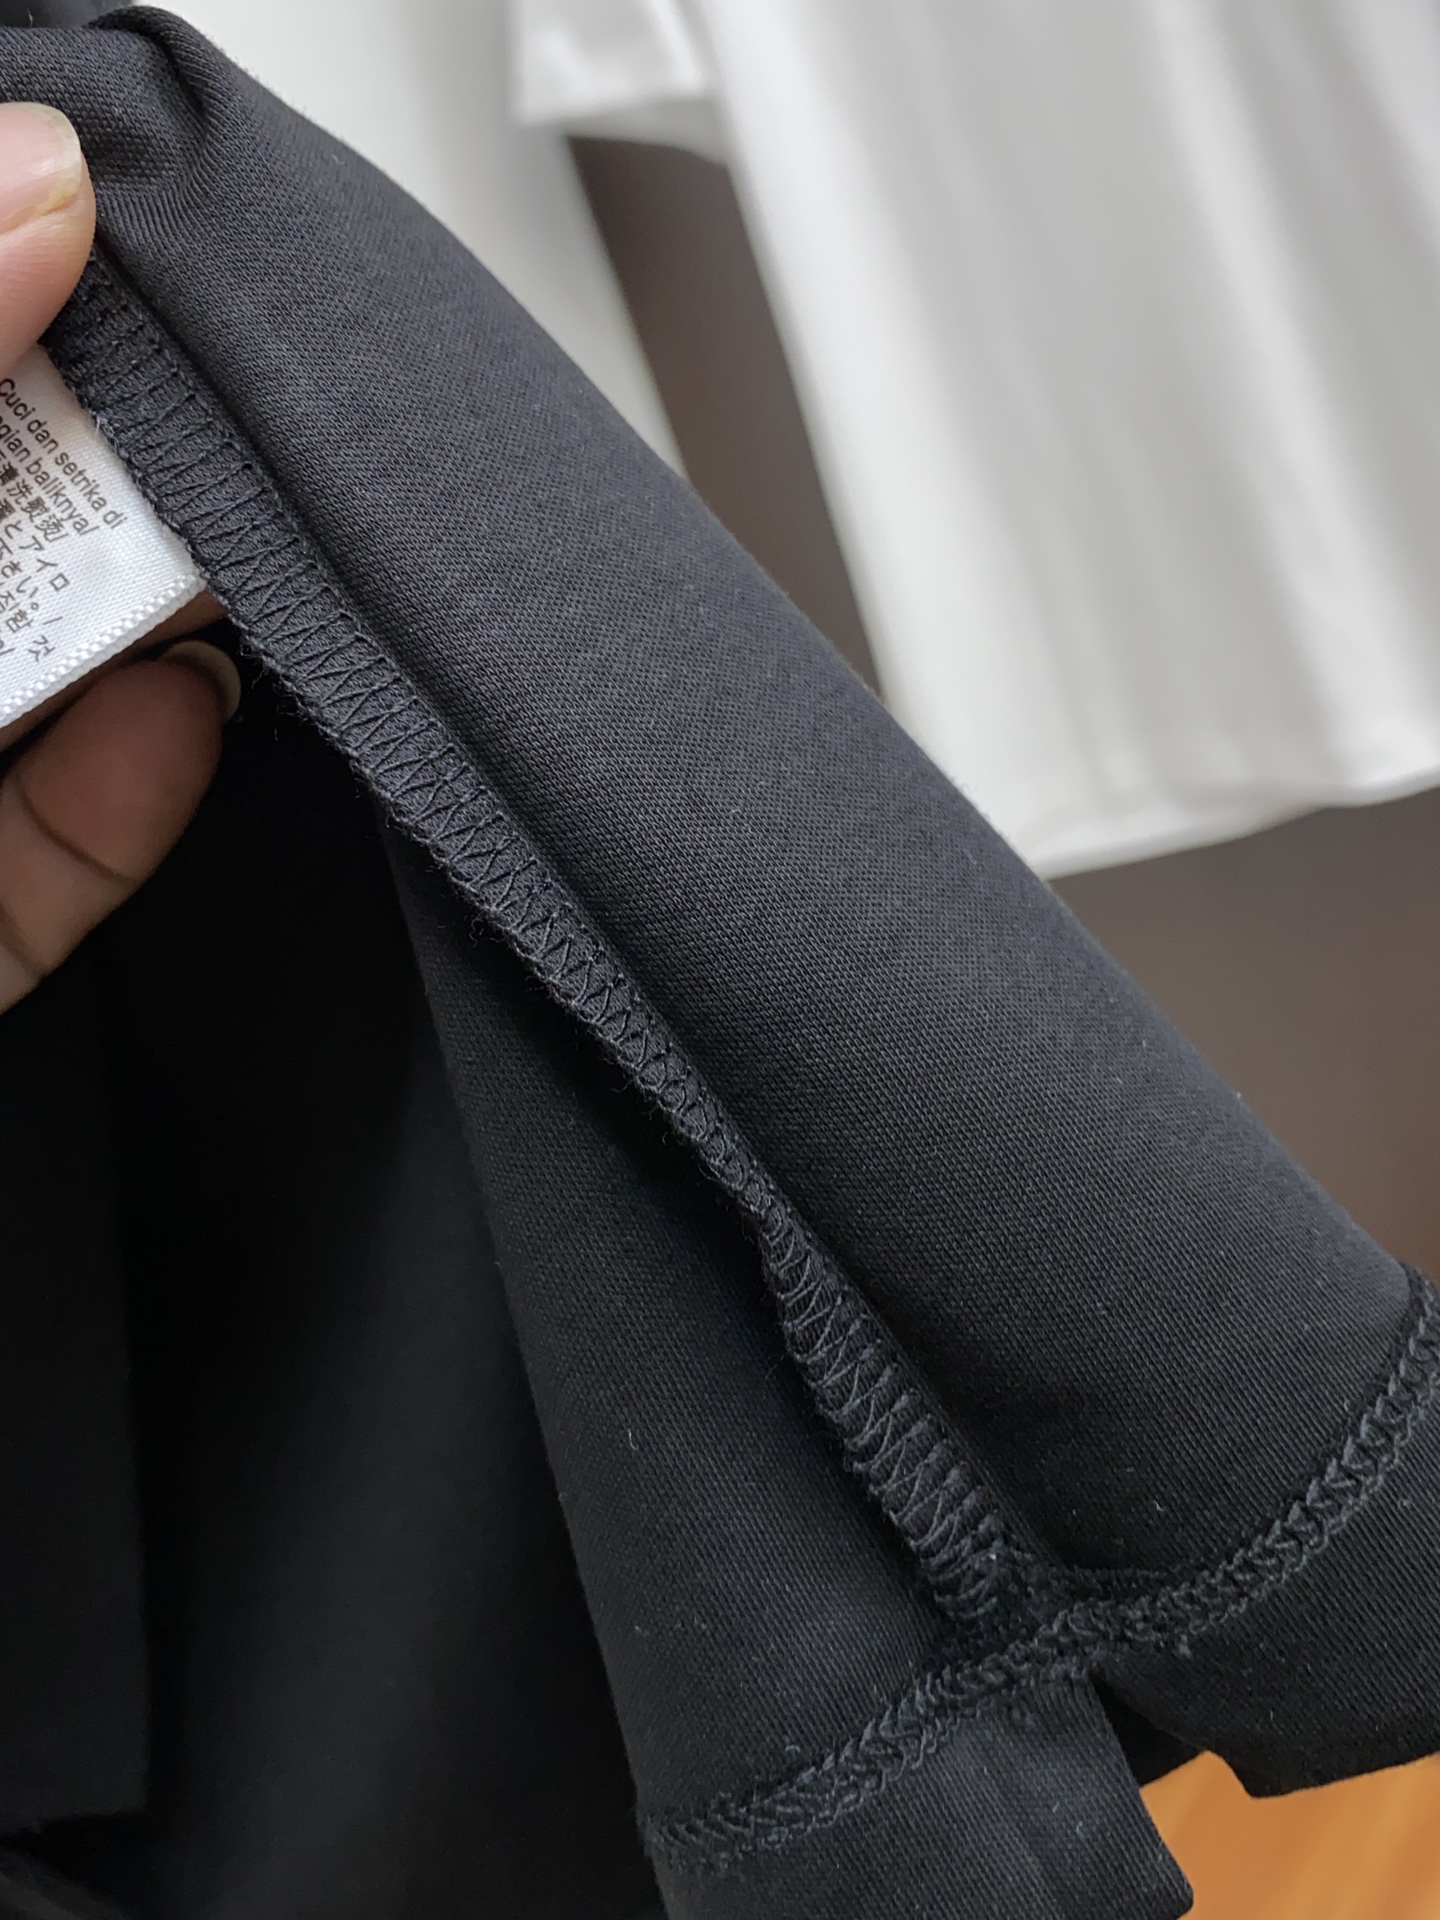 フェンディ メンズ t シャツ偽物 トップス 綿100% プリント 短袖 ゆったり シンプル 柔らかい メンズ ブラック_6